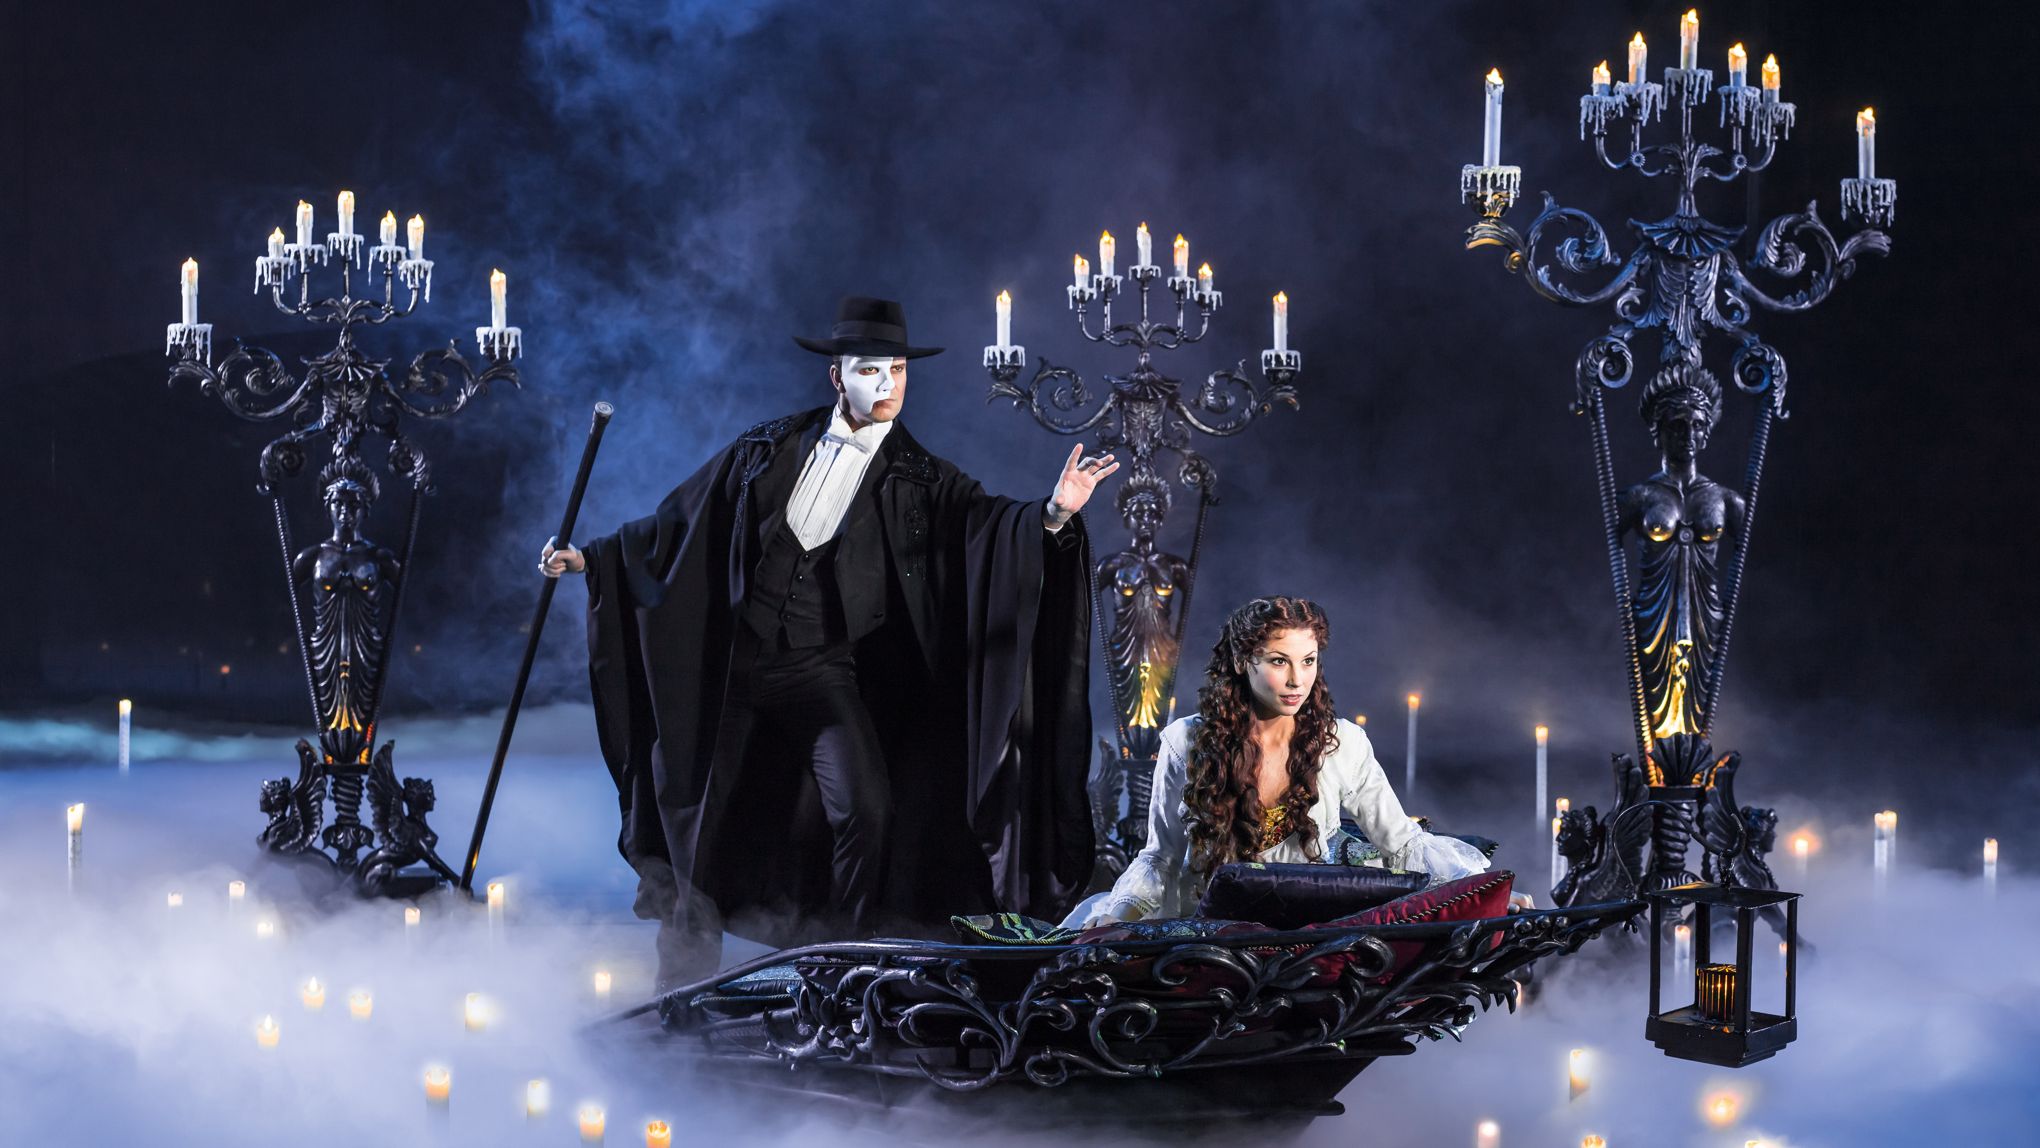 Le mythique Fantôme de l'Opéra revient hanter Paris